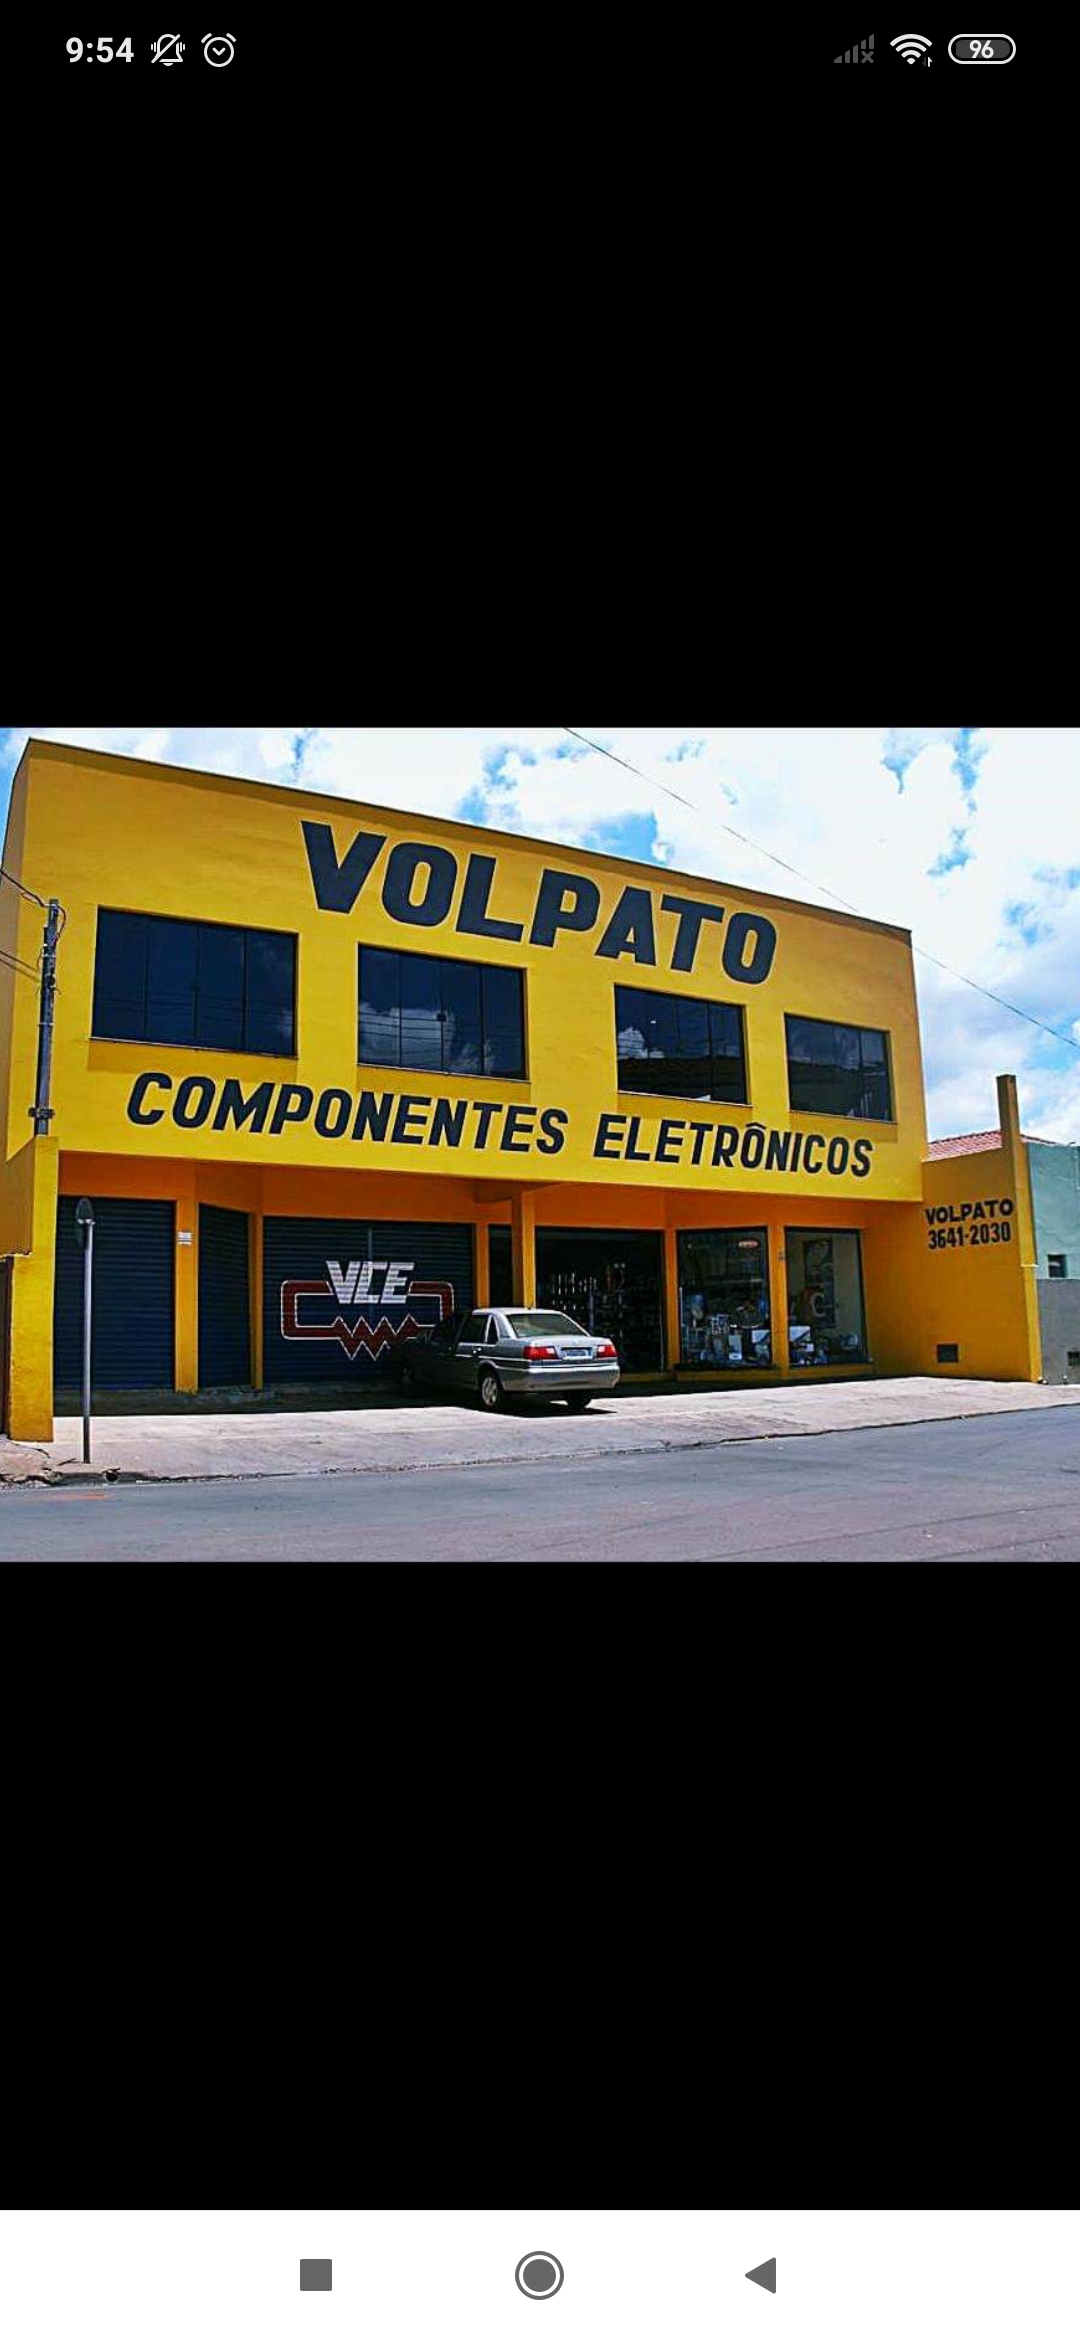 VCE - Volpato Componentes Eletrônicos